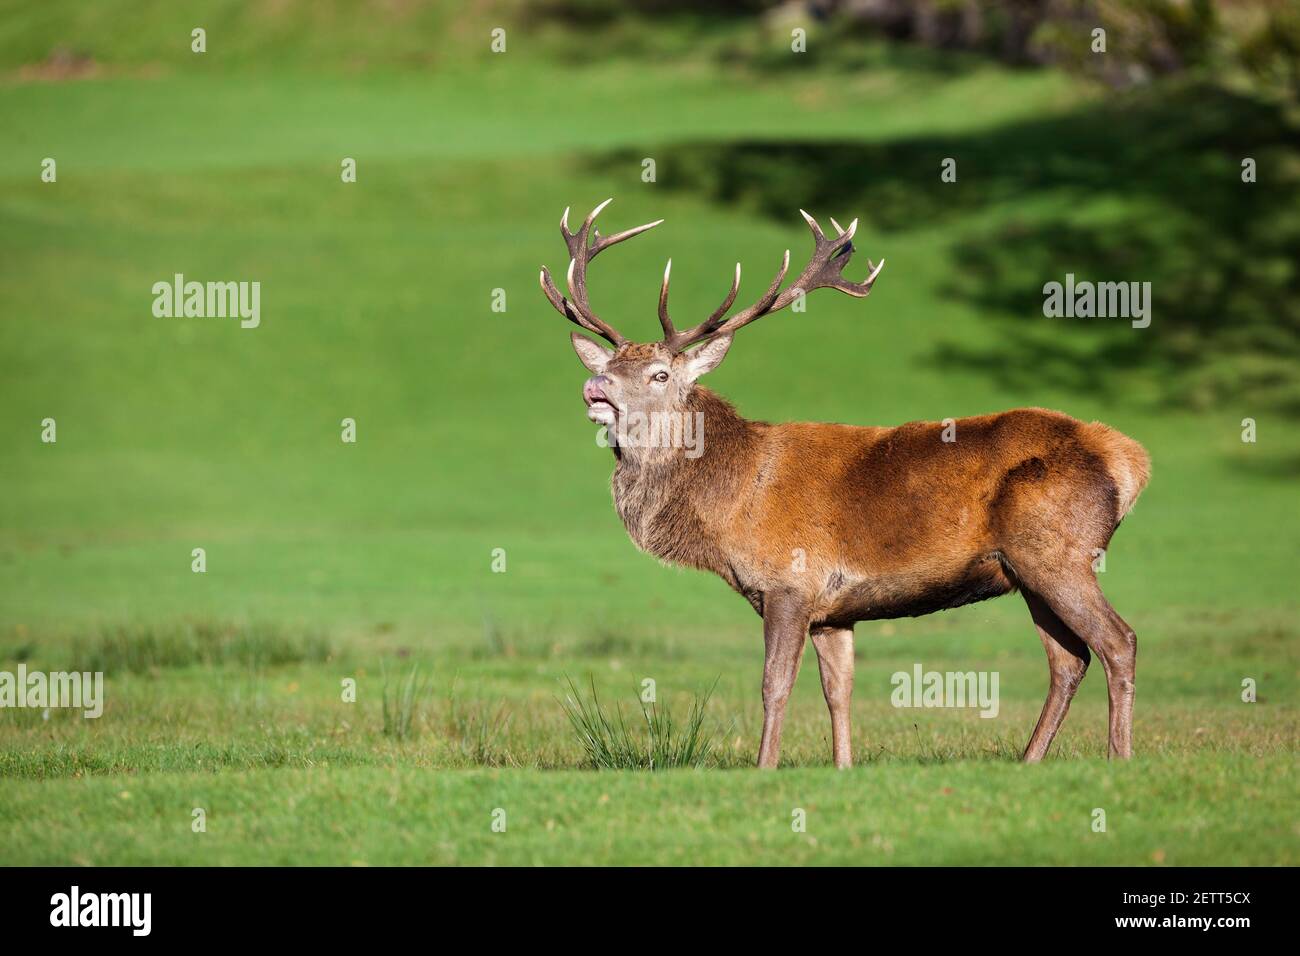 Red deer stag (Cervus elaphus) showing flehmen response, Arran, Scotland, UK Stock Photo